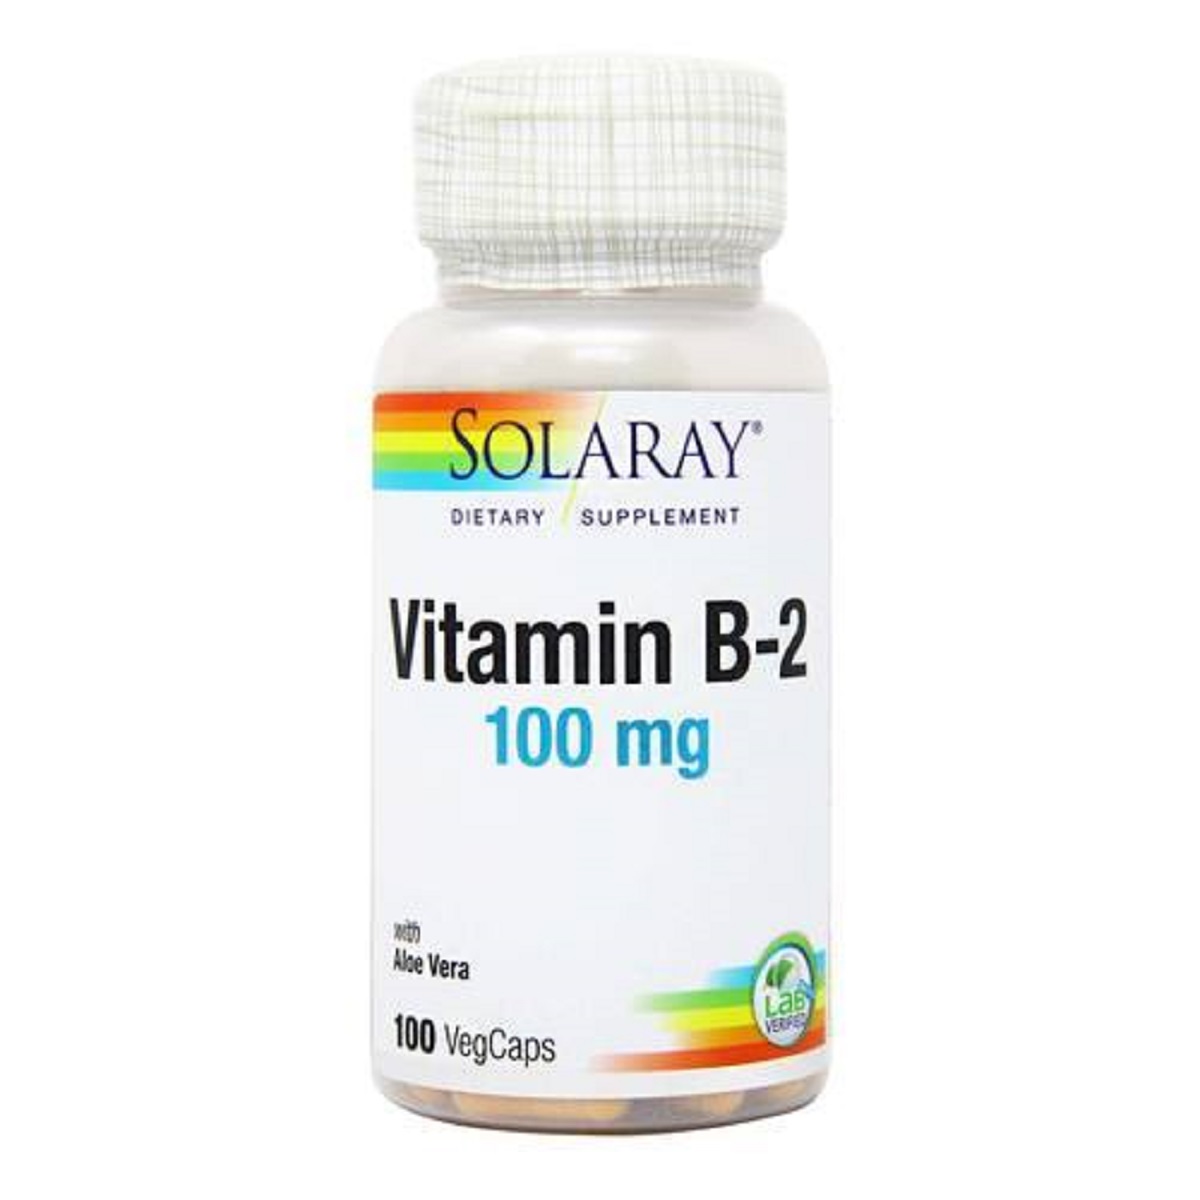 Витамин B2, 100 Мг, Solaray, 100 капсул